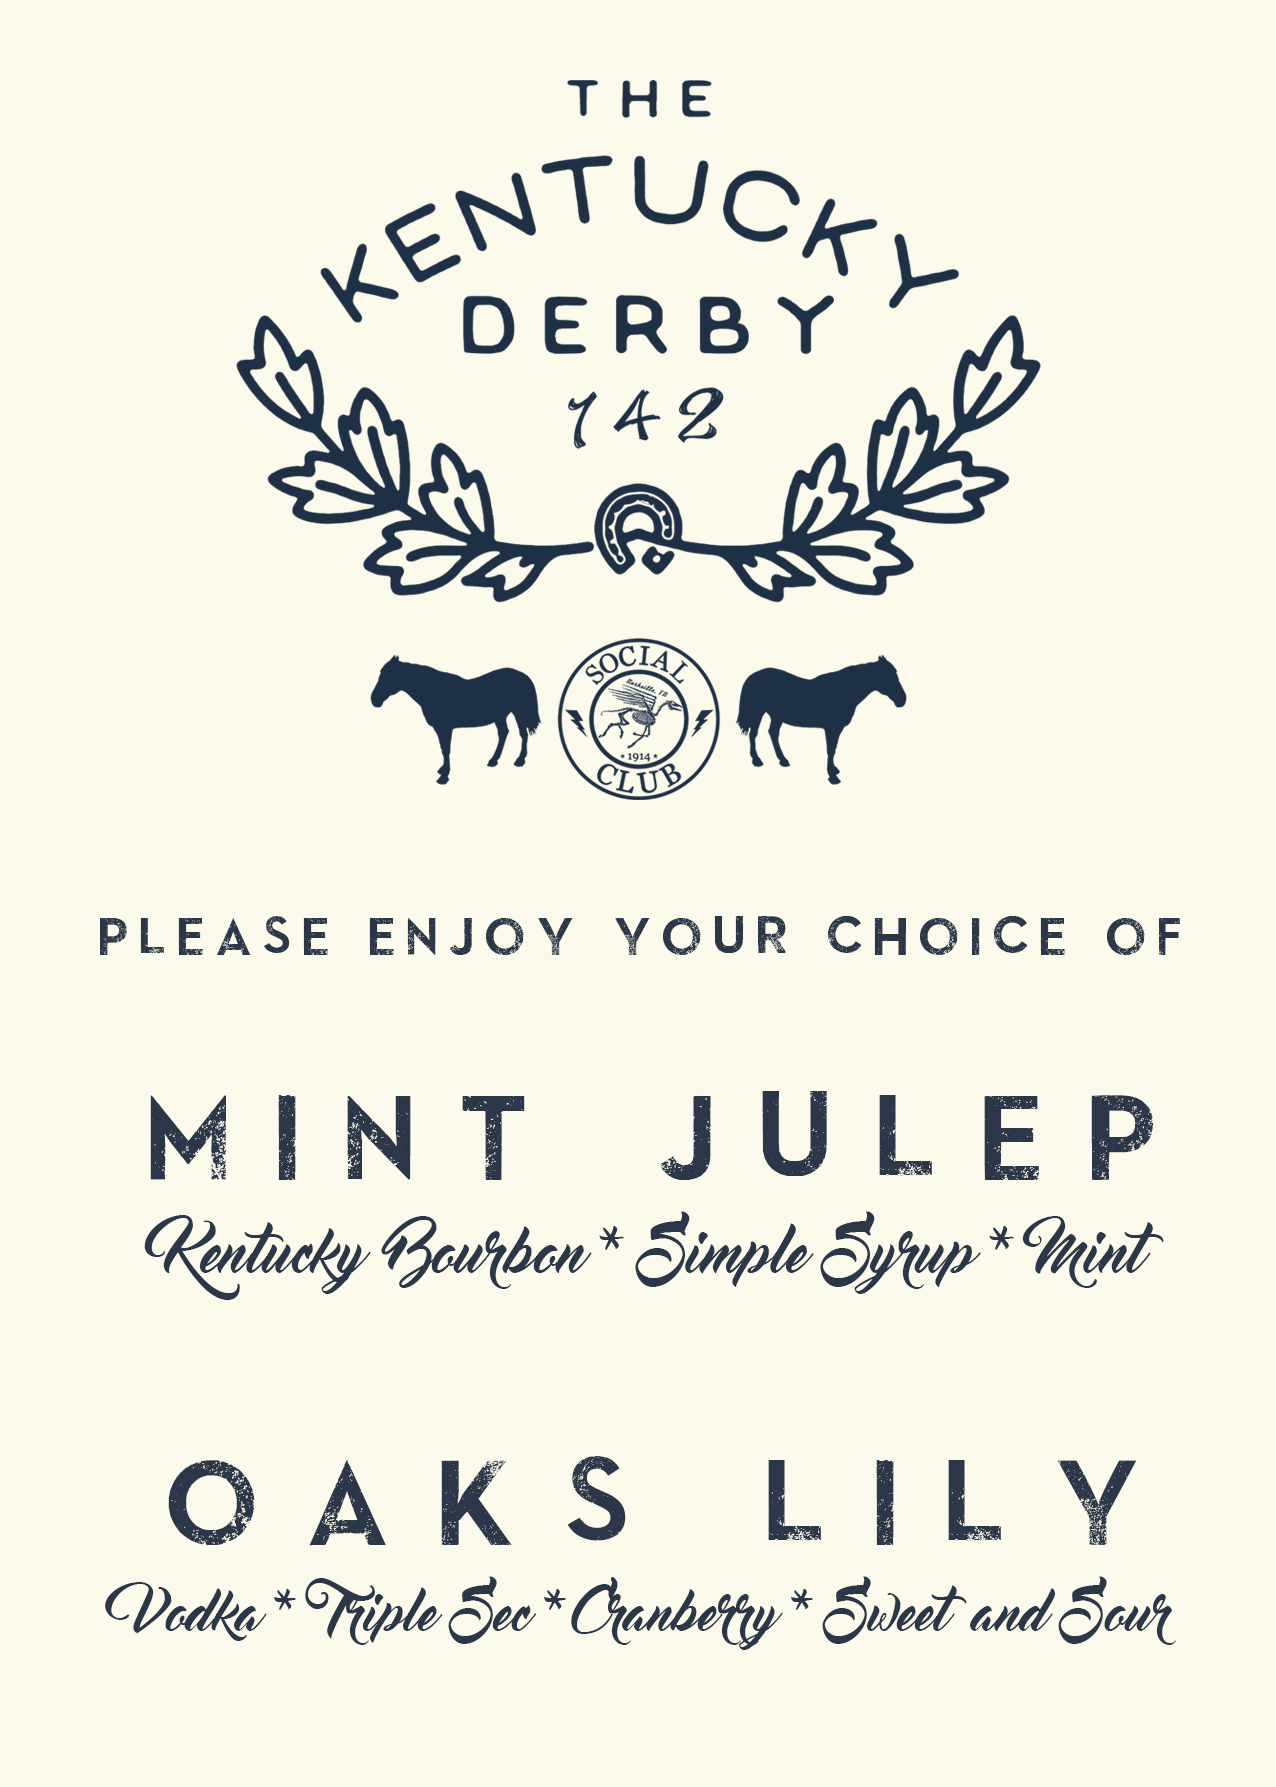 derby party drink menu.jpg